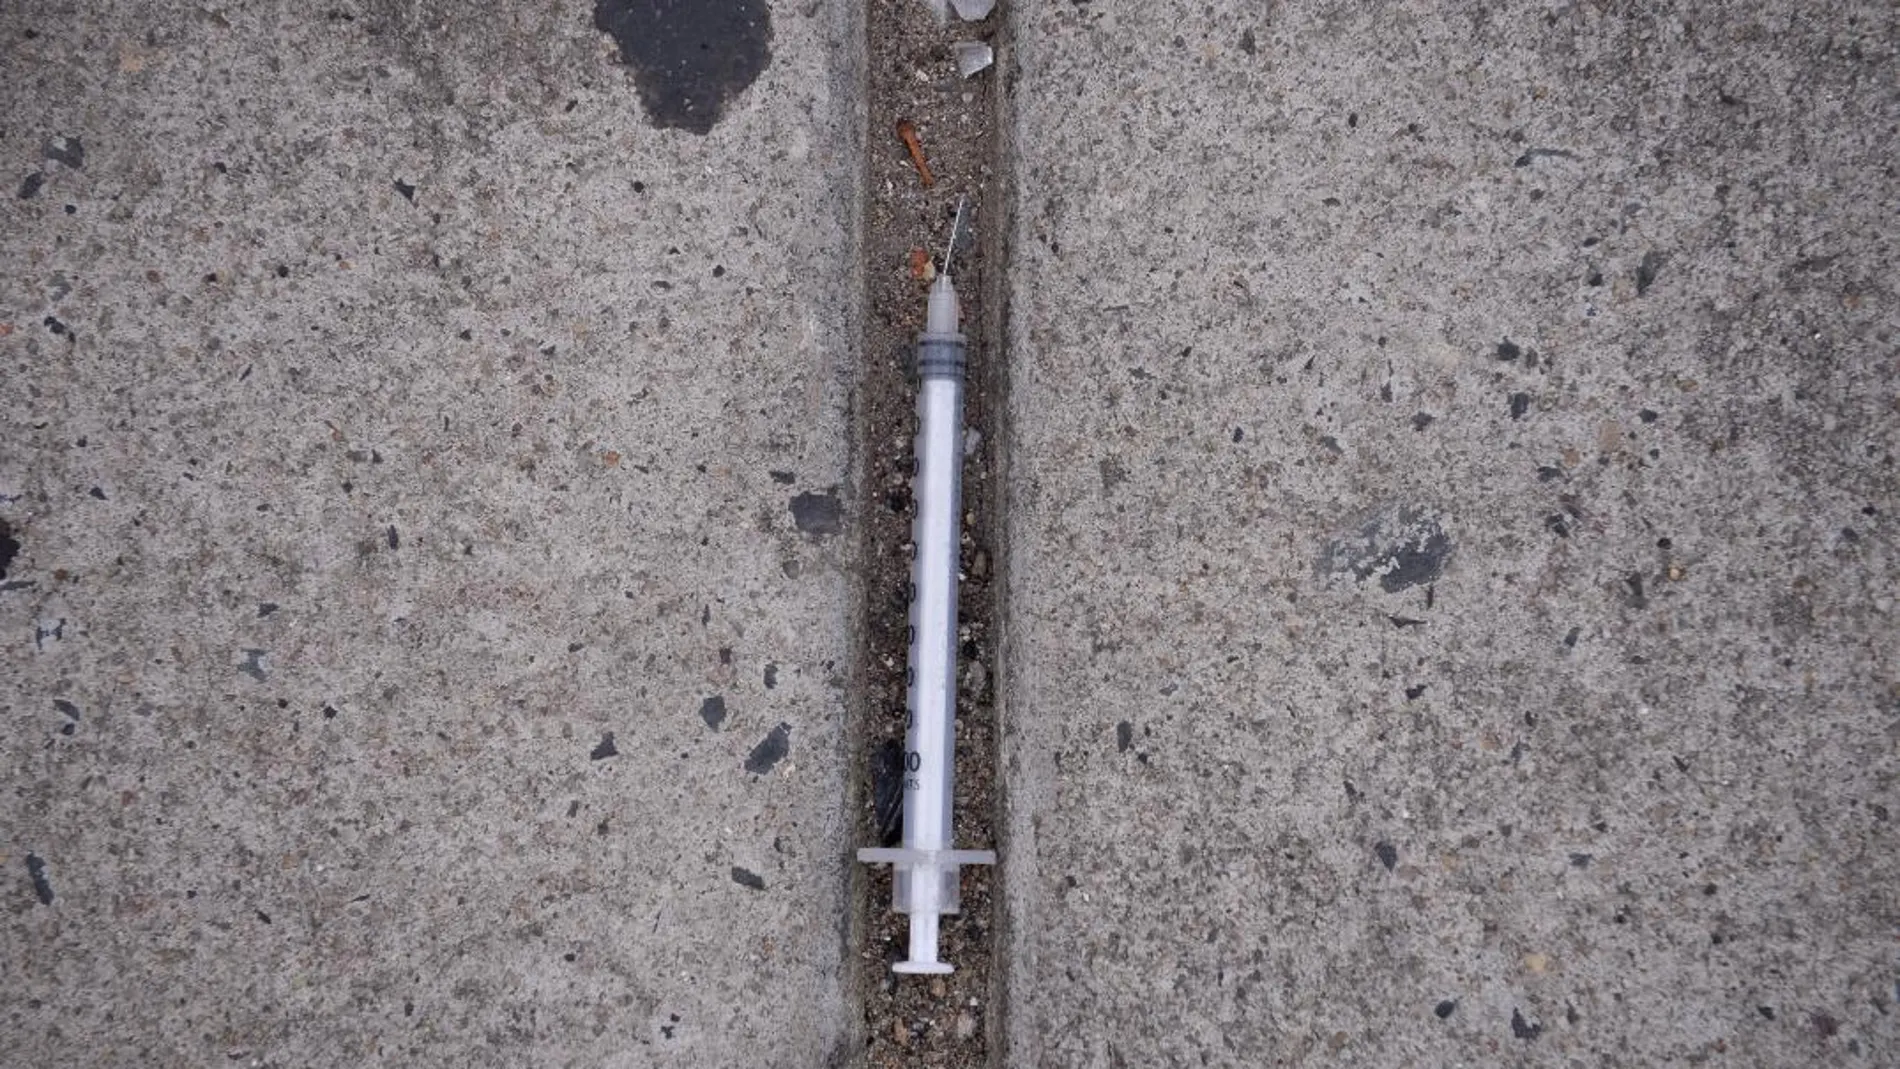 Una jeringuilla utilizada para suministrarse heroína, en una imagen tomada el pasado mes de octubre en Estados Unidos